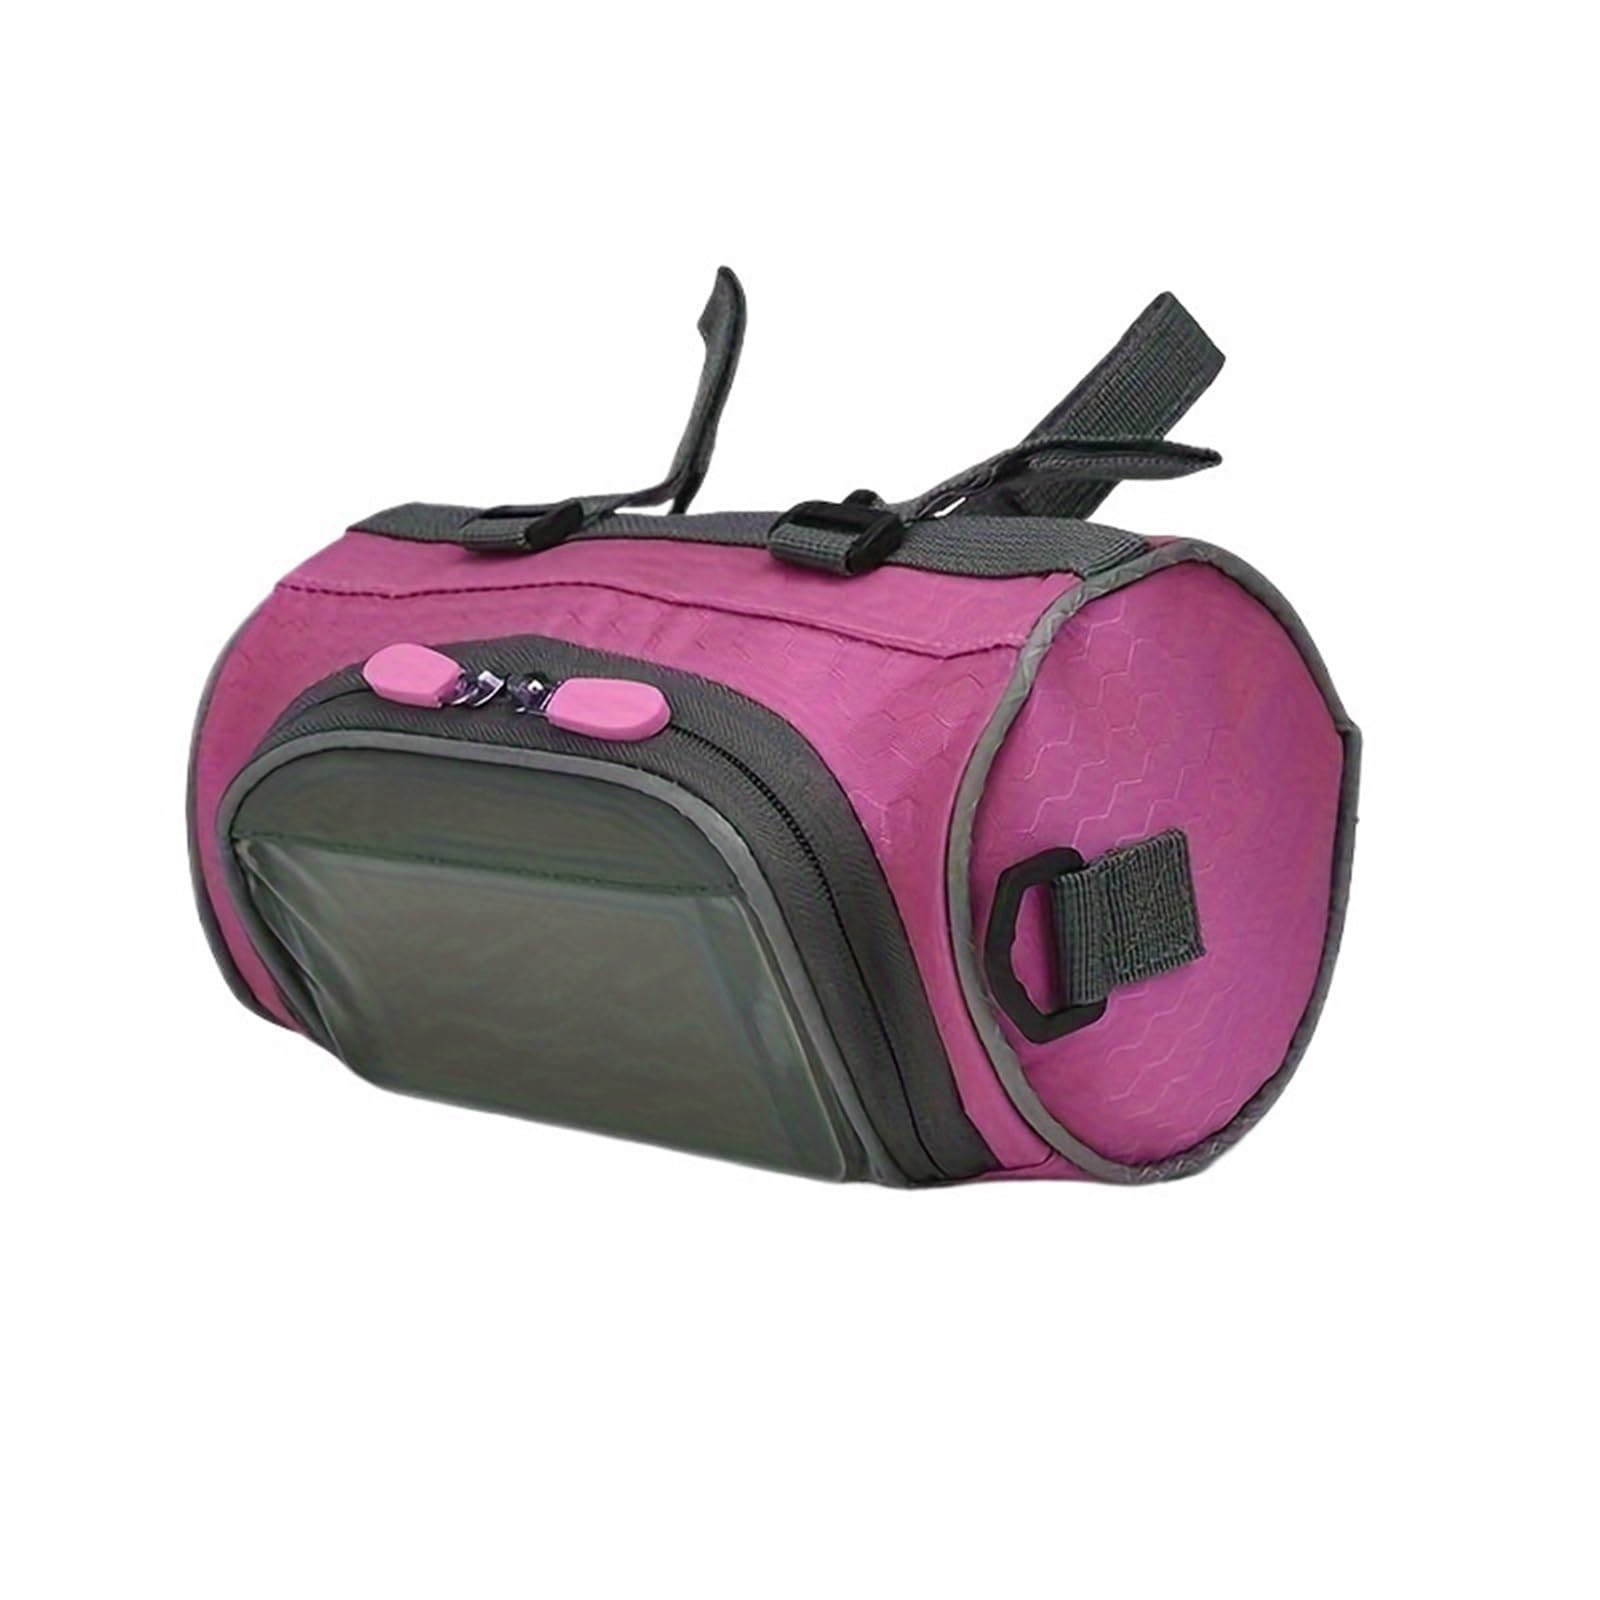 YGLEEULI Fahrradtasche Touchscreen-Fahrrad-Lenkertasche, wasserdichte Fahrrad-Frontrahmentasche, verstellbar, großes Kapazitätspaket for Outdoor-Fahrradausrüstung(1pcs pink) von YGLEEULI